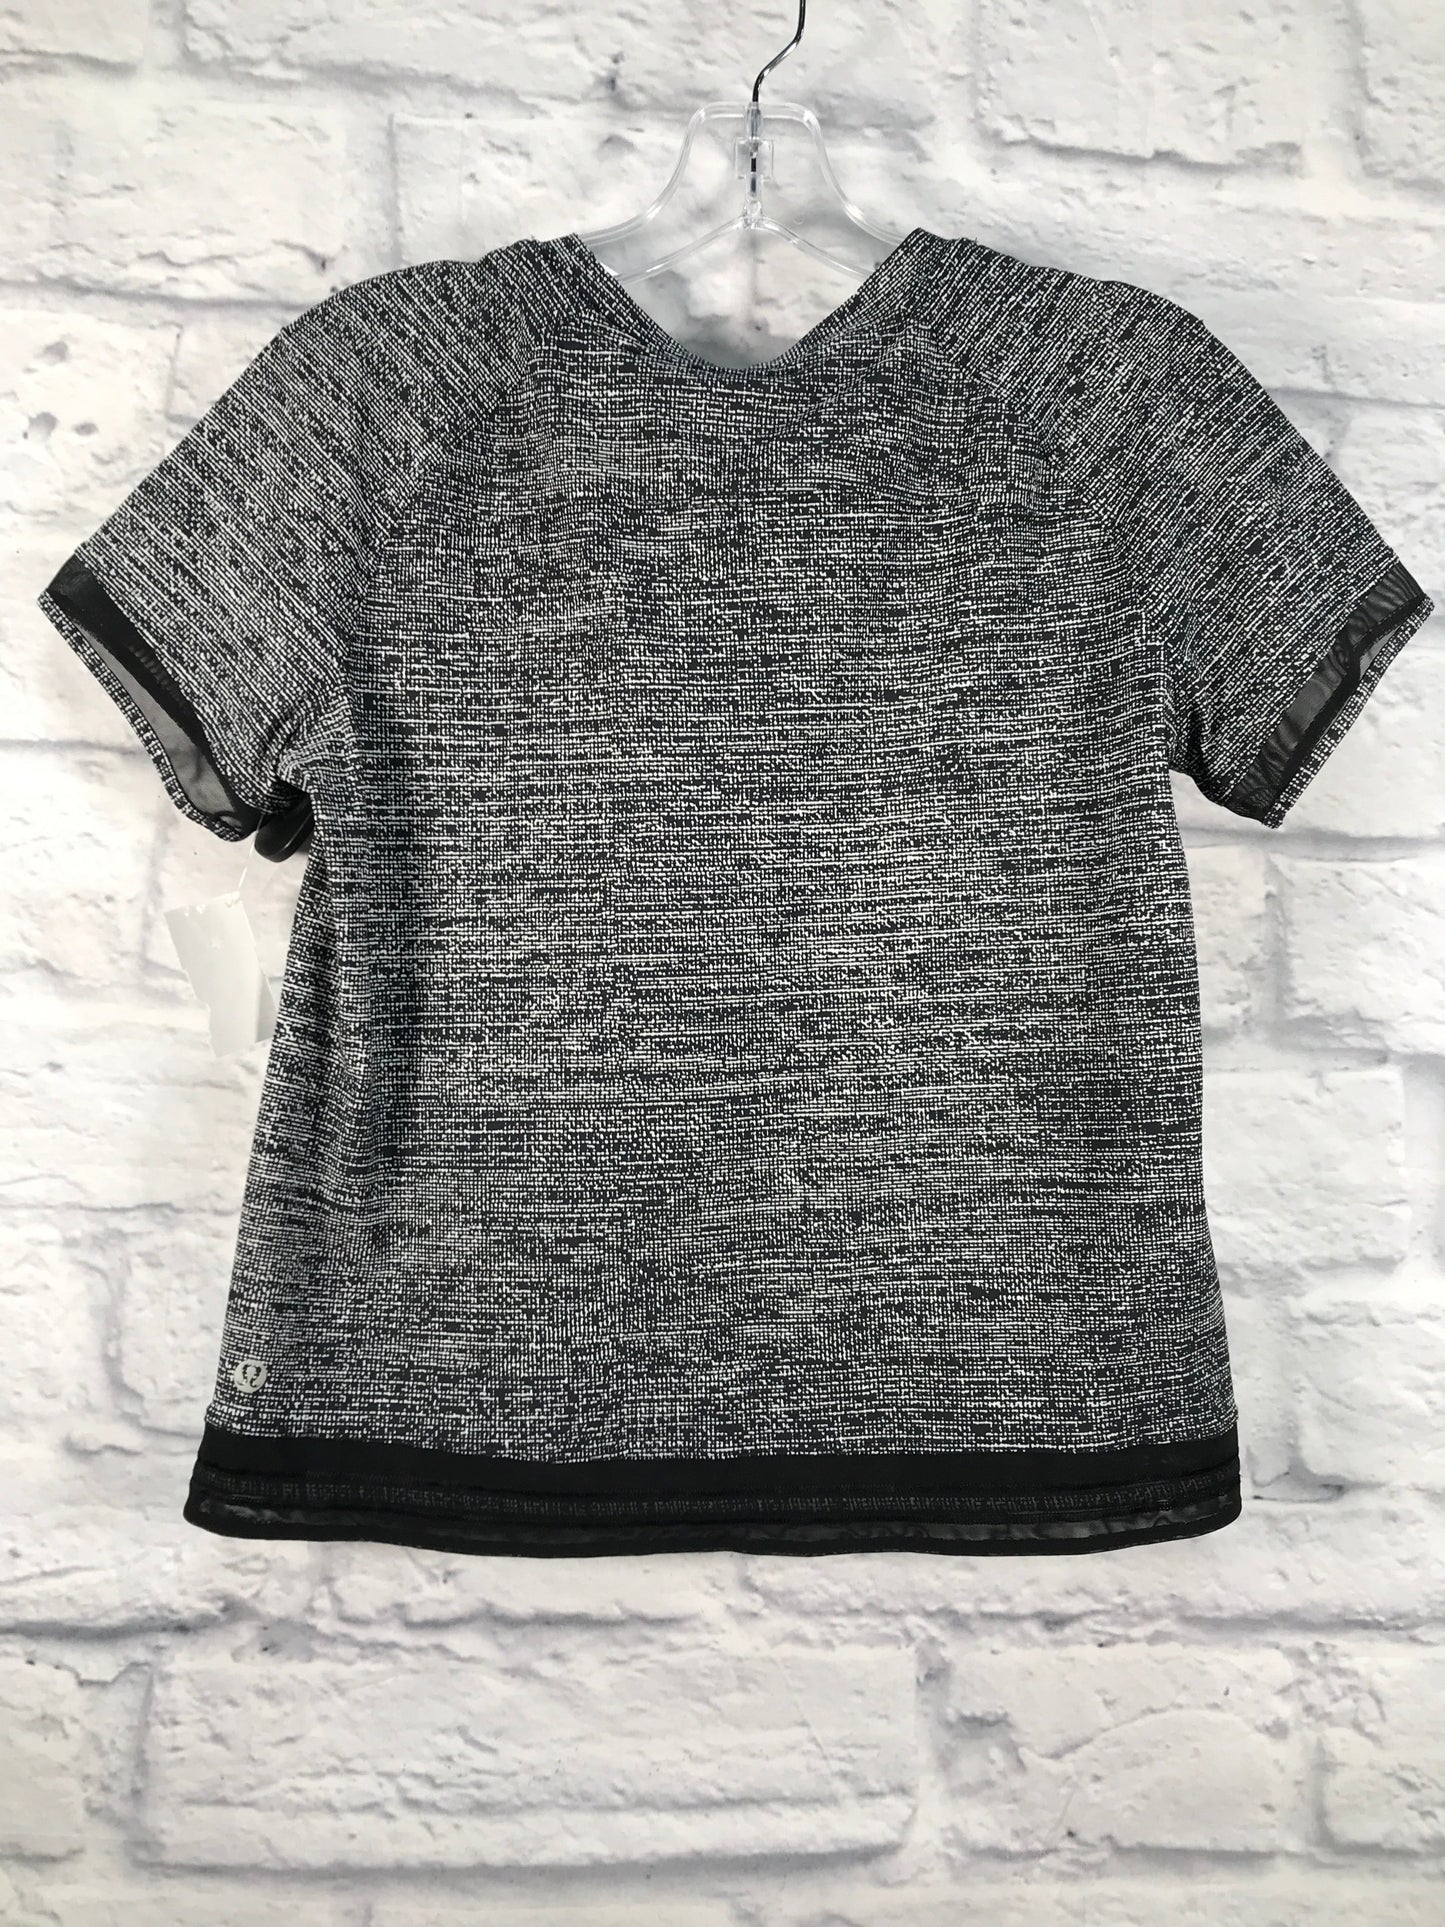 Grey Athletic Top Short Sleeve Lululemon, Size S